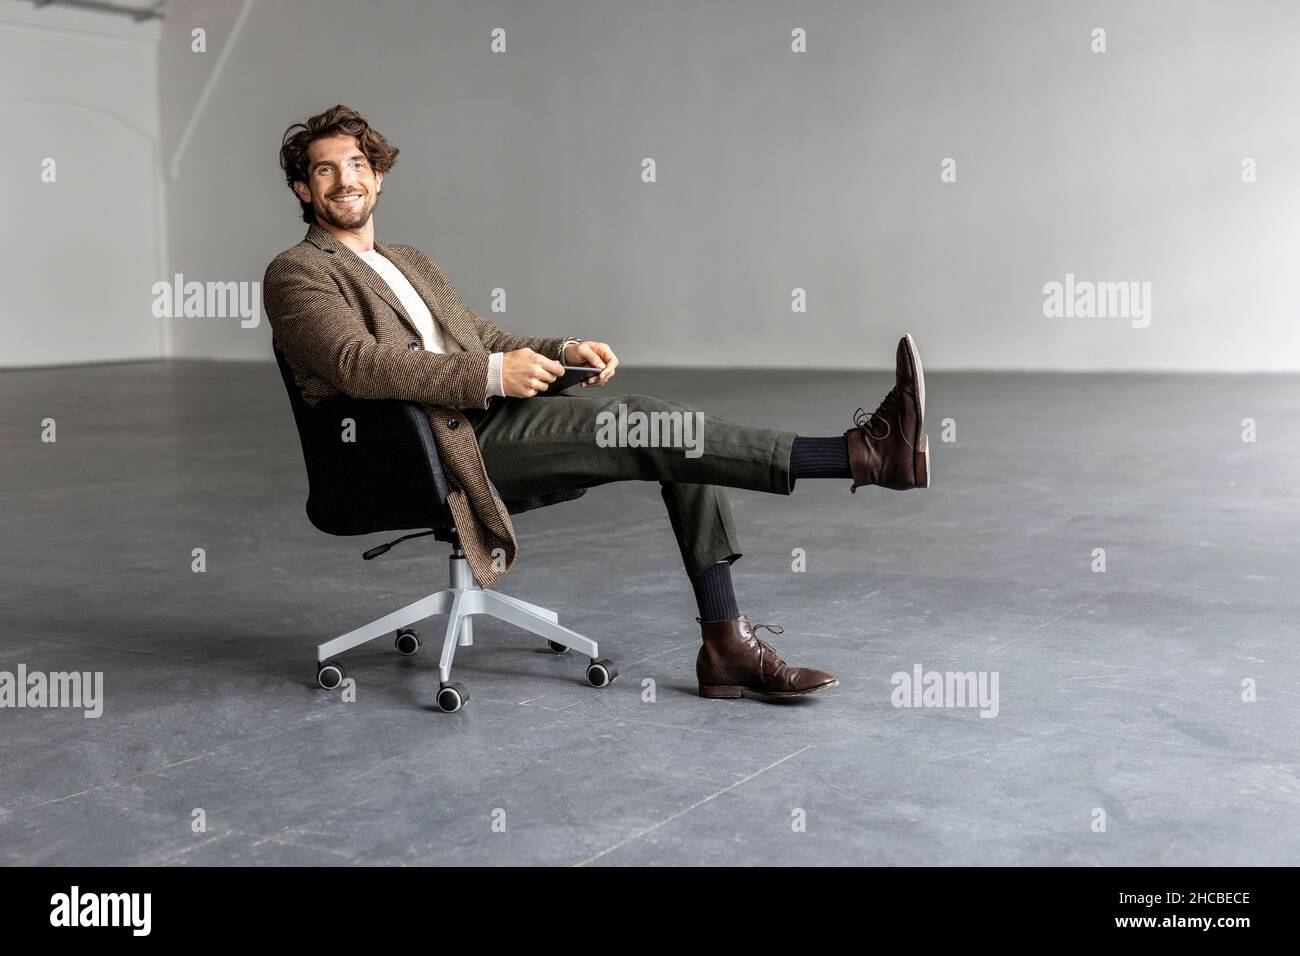 Homme d'affaires souriant avec le pied relevé assis sur une chaise dans une salle industrielle vide Banque D'Images